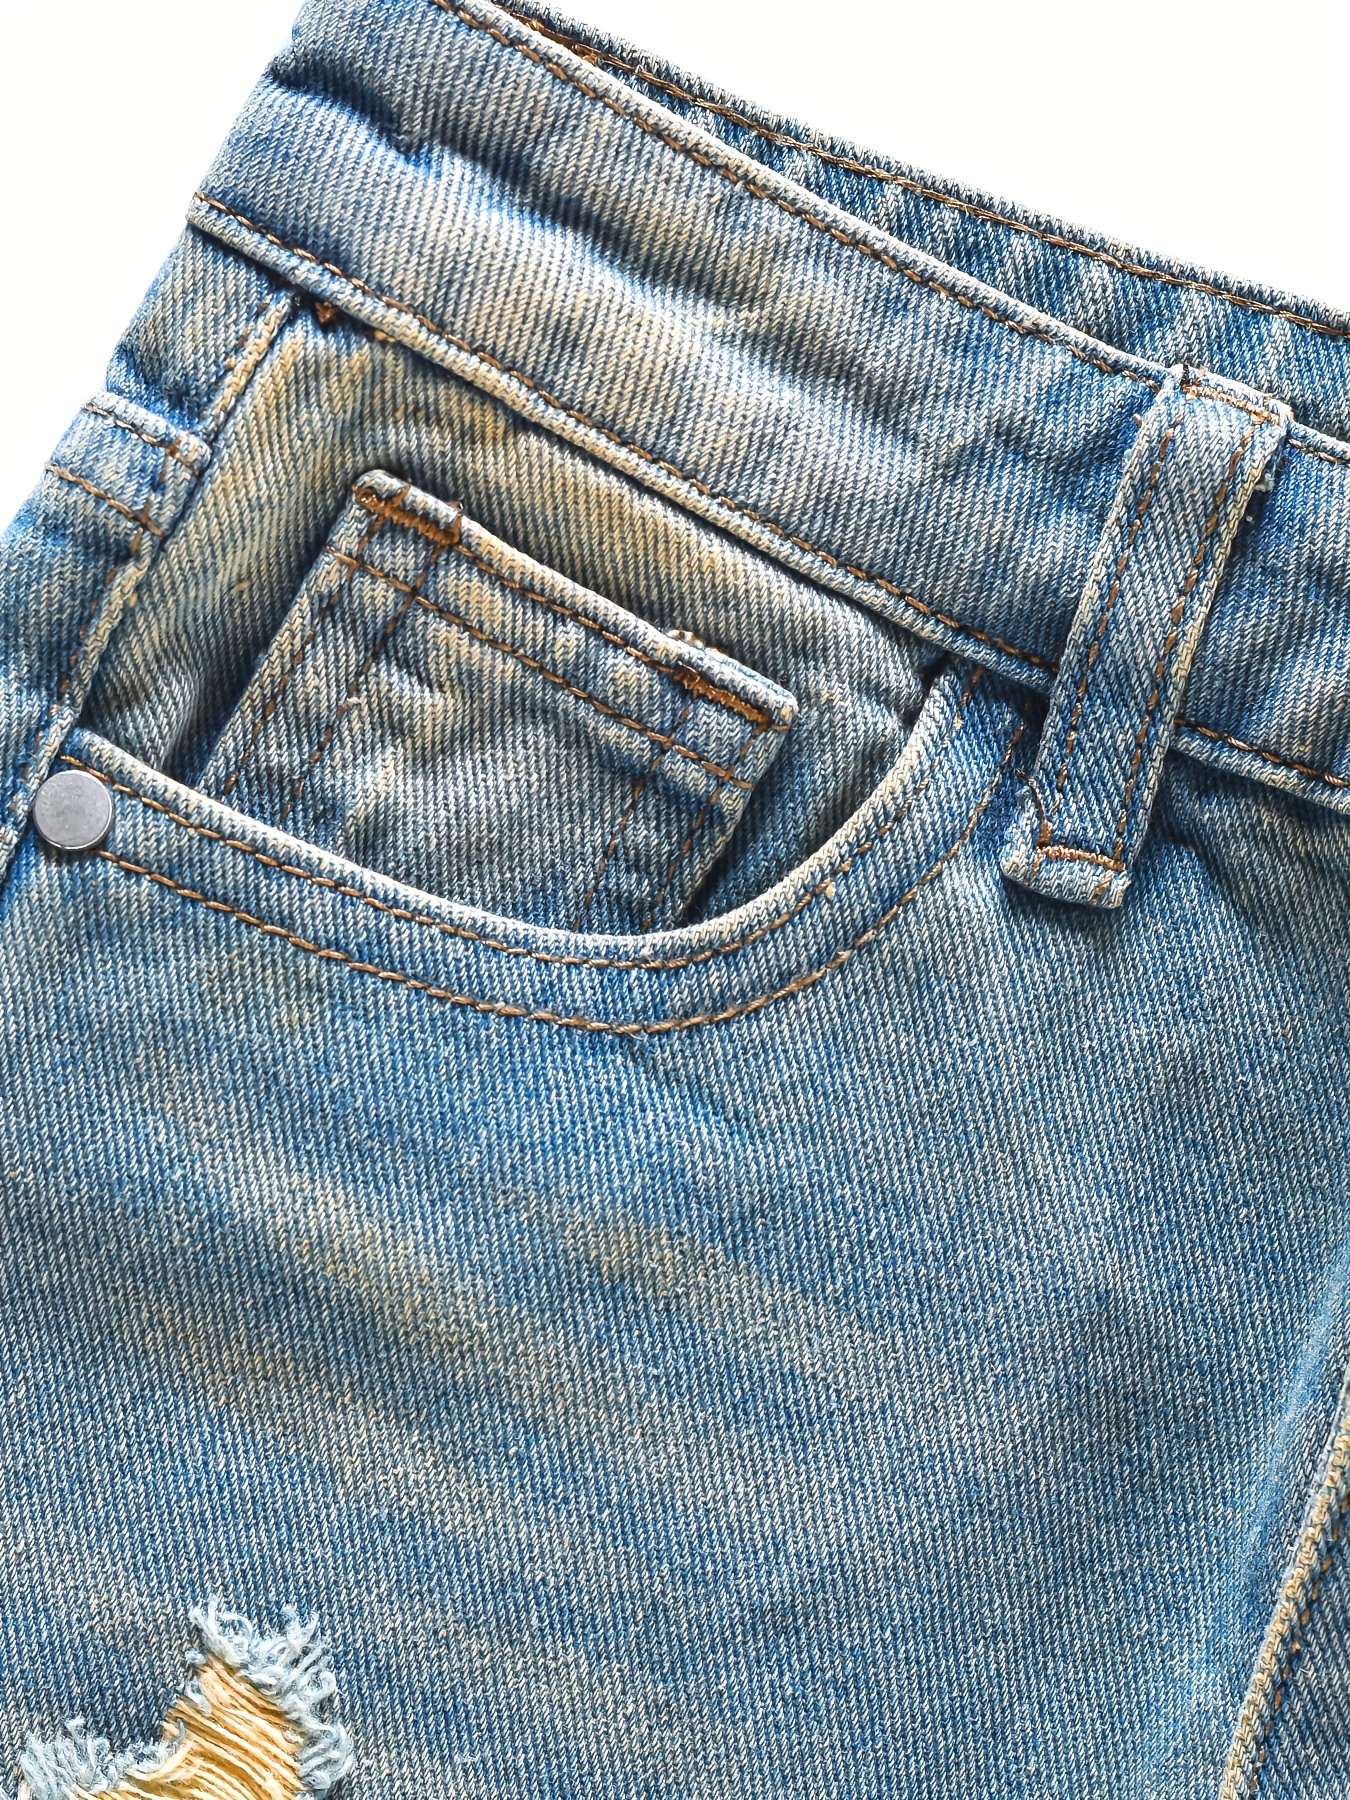 Jeans Pretos Rasgados Para Crianças, Calças Jeans Estilo De Rua Para  Meninos Legais, Roupas De Menino Para Todas As Estações